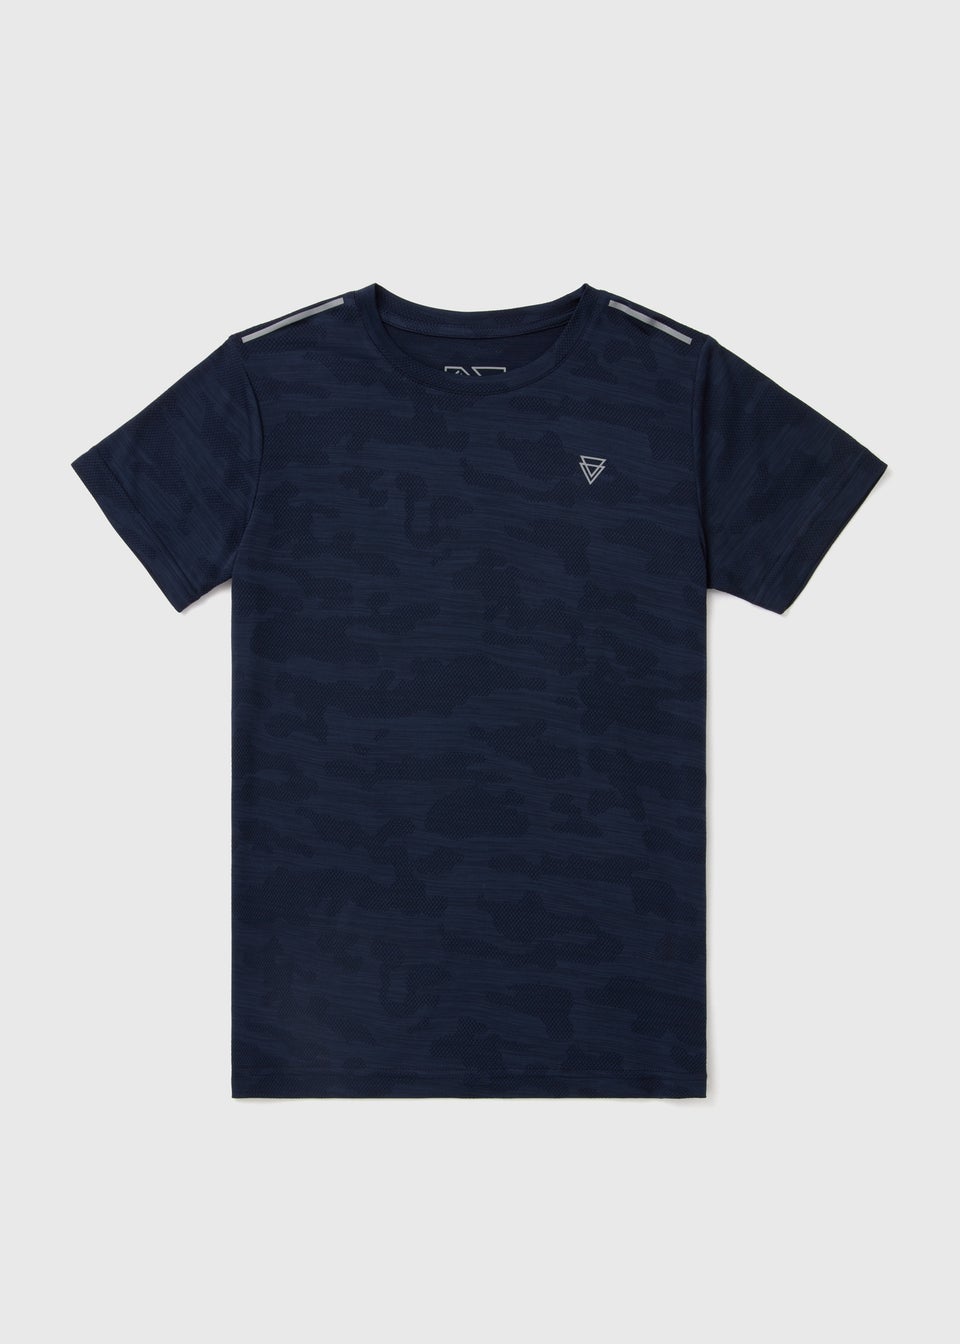 Boys Navy Camo Jacquard Sports T-Shirt (7-13yrs)